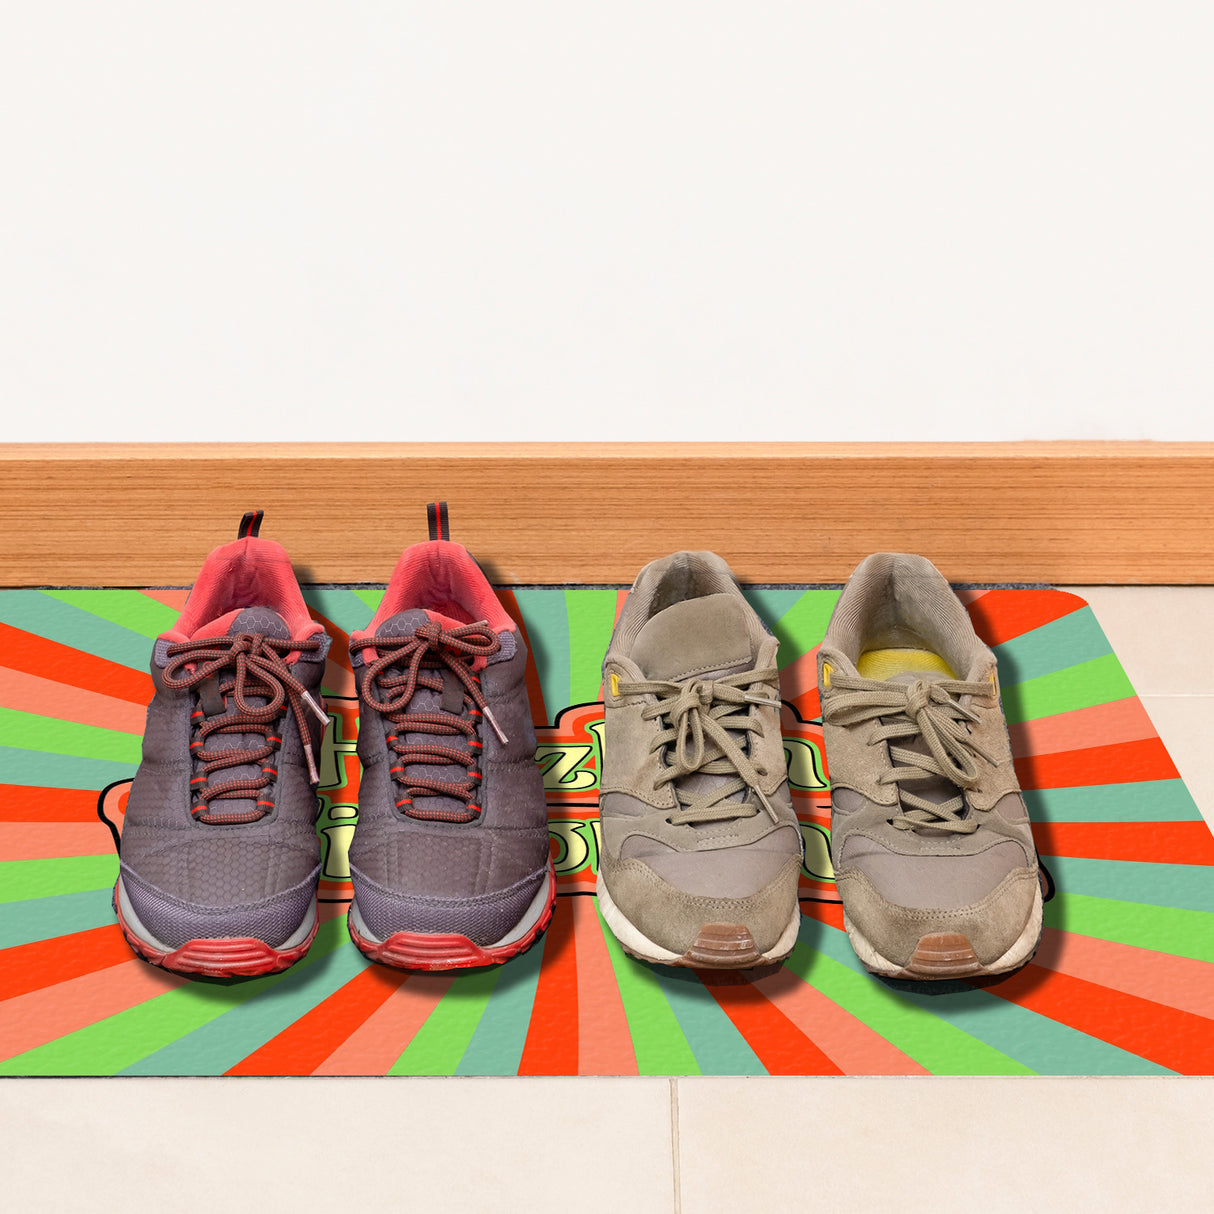 Farbenfrohe Herzlich Willkommen Fußmatte in 35x50 cm ohne Rand in hellen und frischen Farben